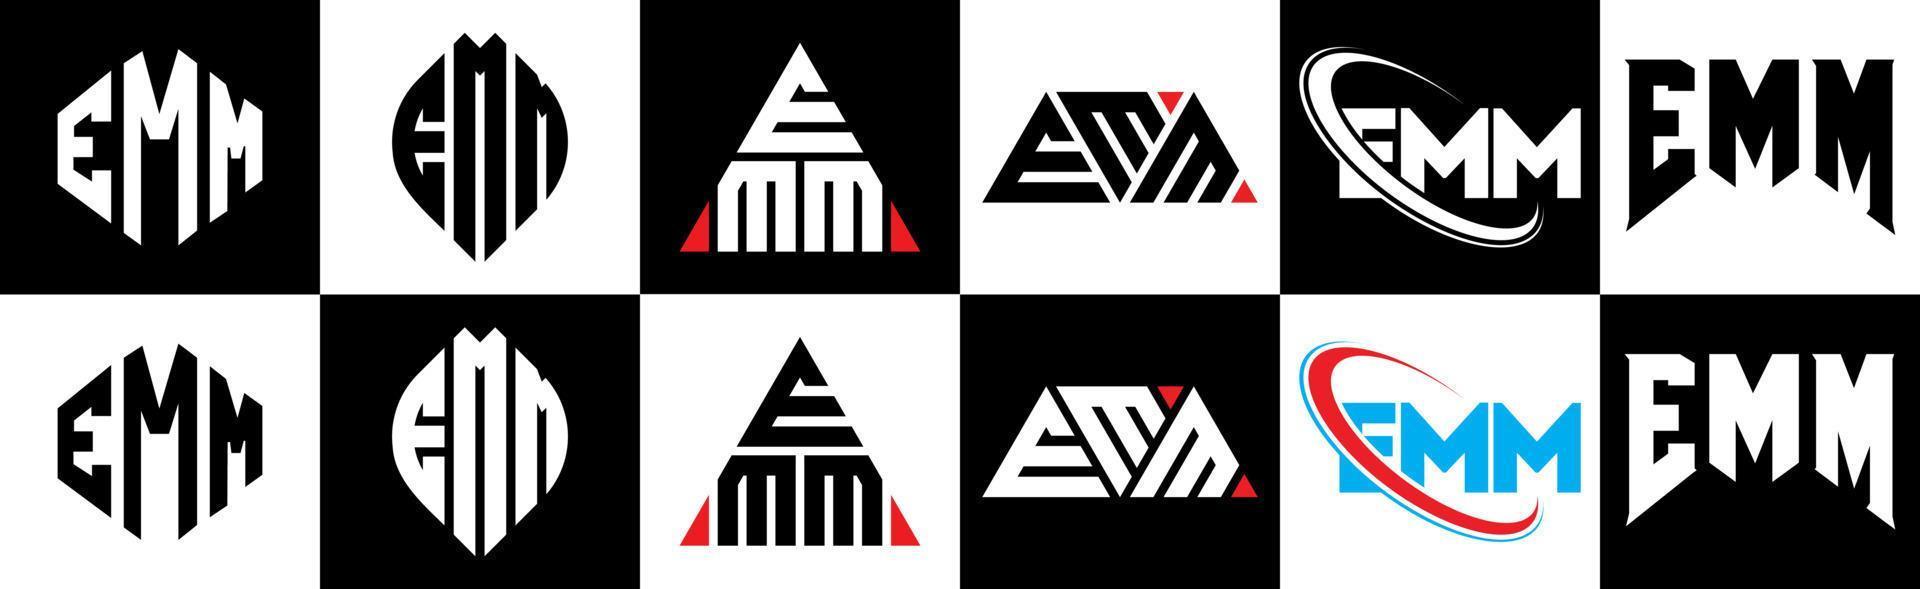 Emm-Buchstaben-Logo-Design in sechs Stilen. emm polygon, kreis, dreieck, hexagon, flacher und einfacher stil mit schwarz-weißem buchstabenlogo in einer zeichenfläche. Emm minimalistisches und klassisches Logo vektor